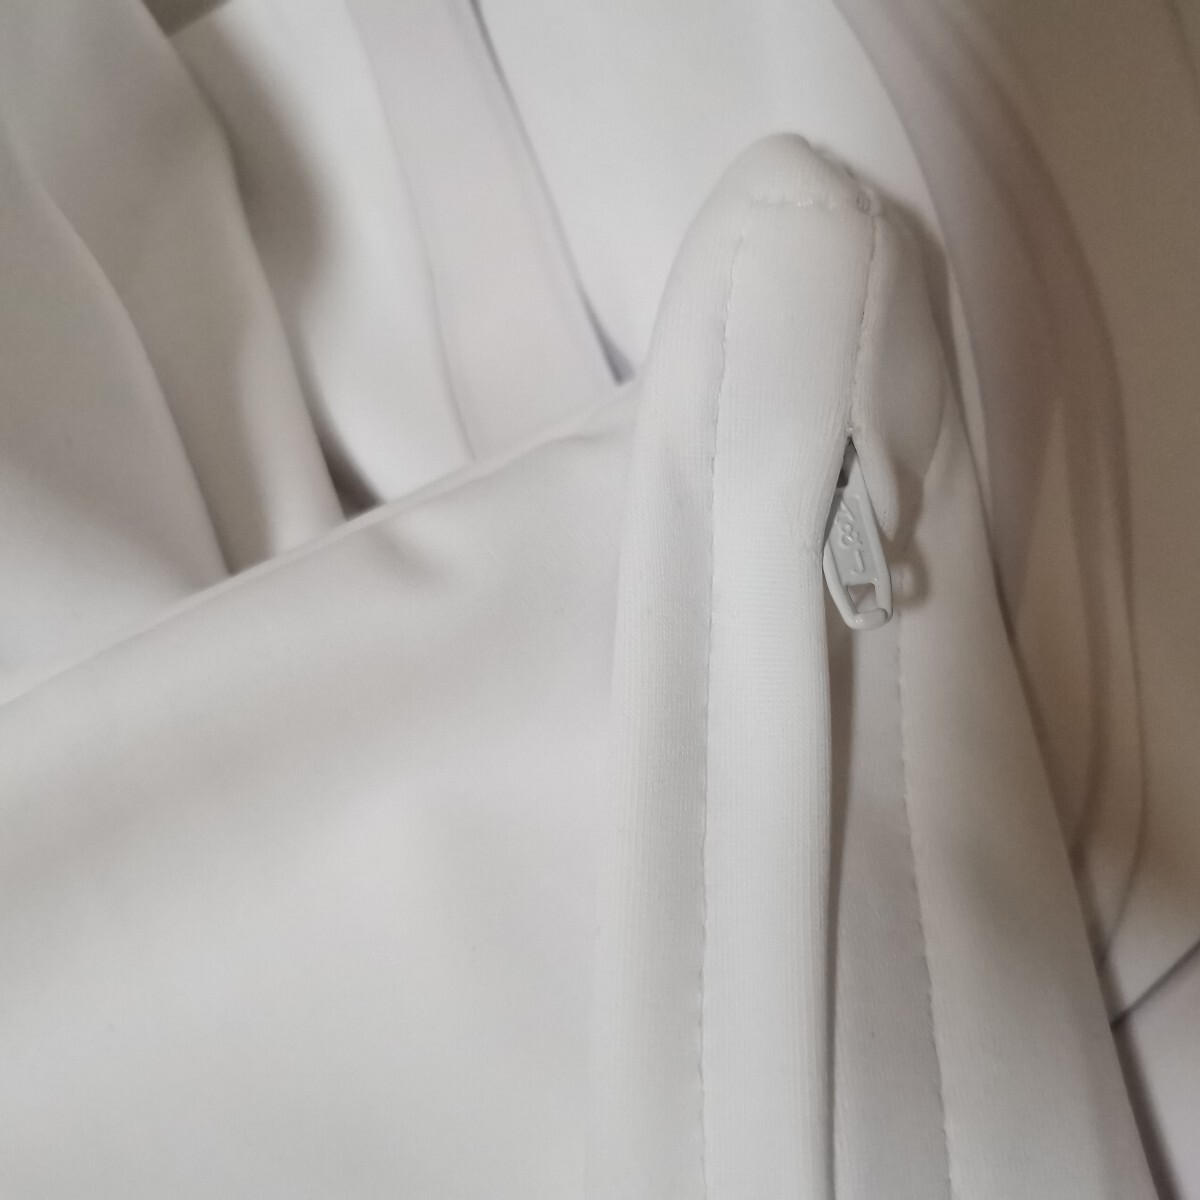 [ б/у ]MIGNON WORKS белый купальный костюм Dakimakura покрытие стандартный товар 